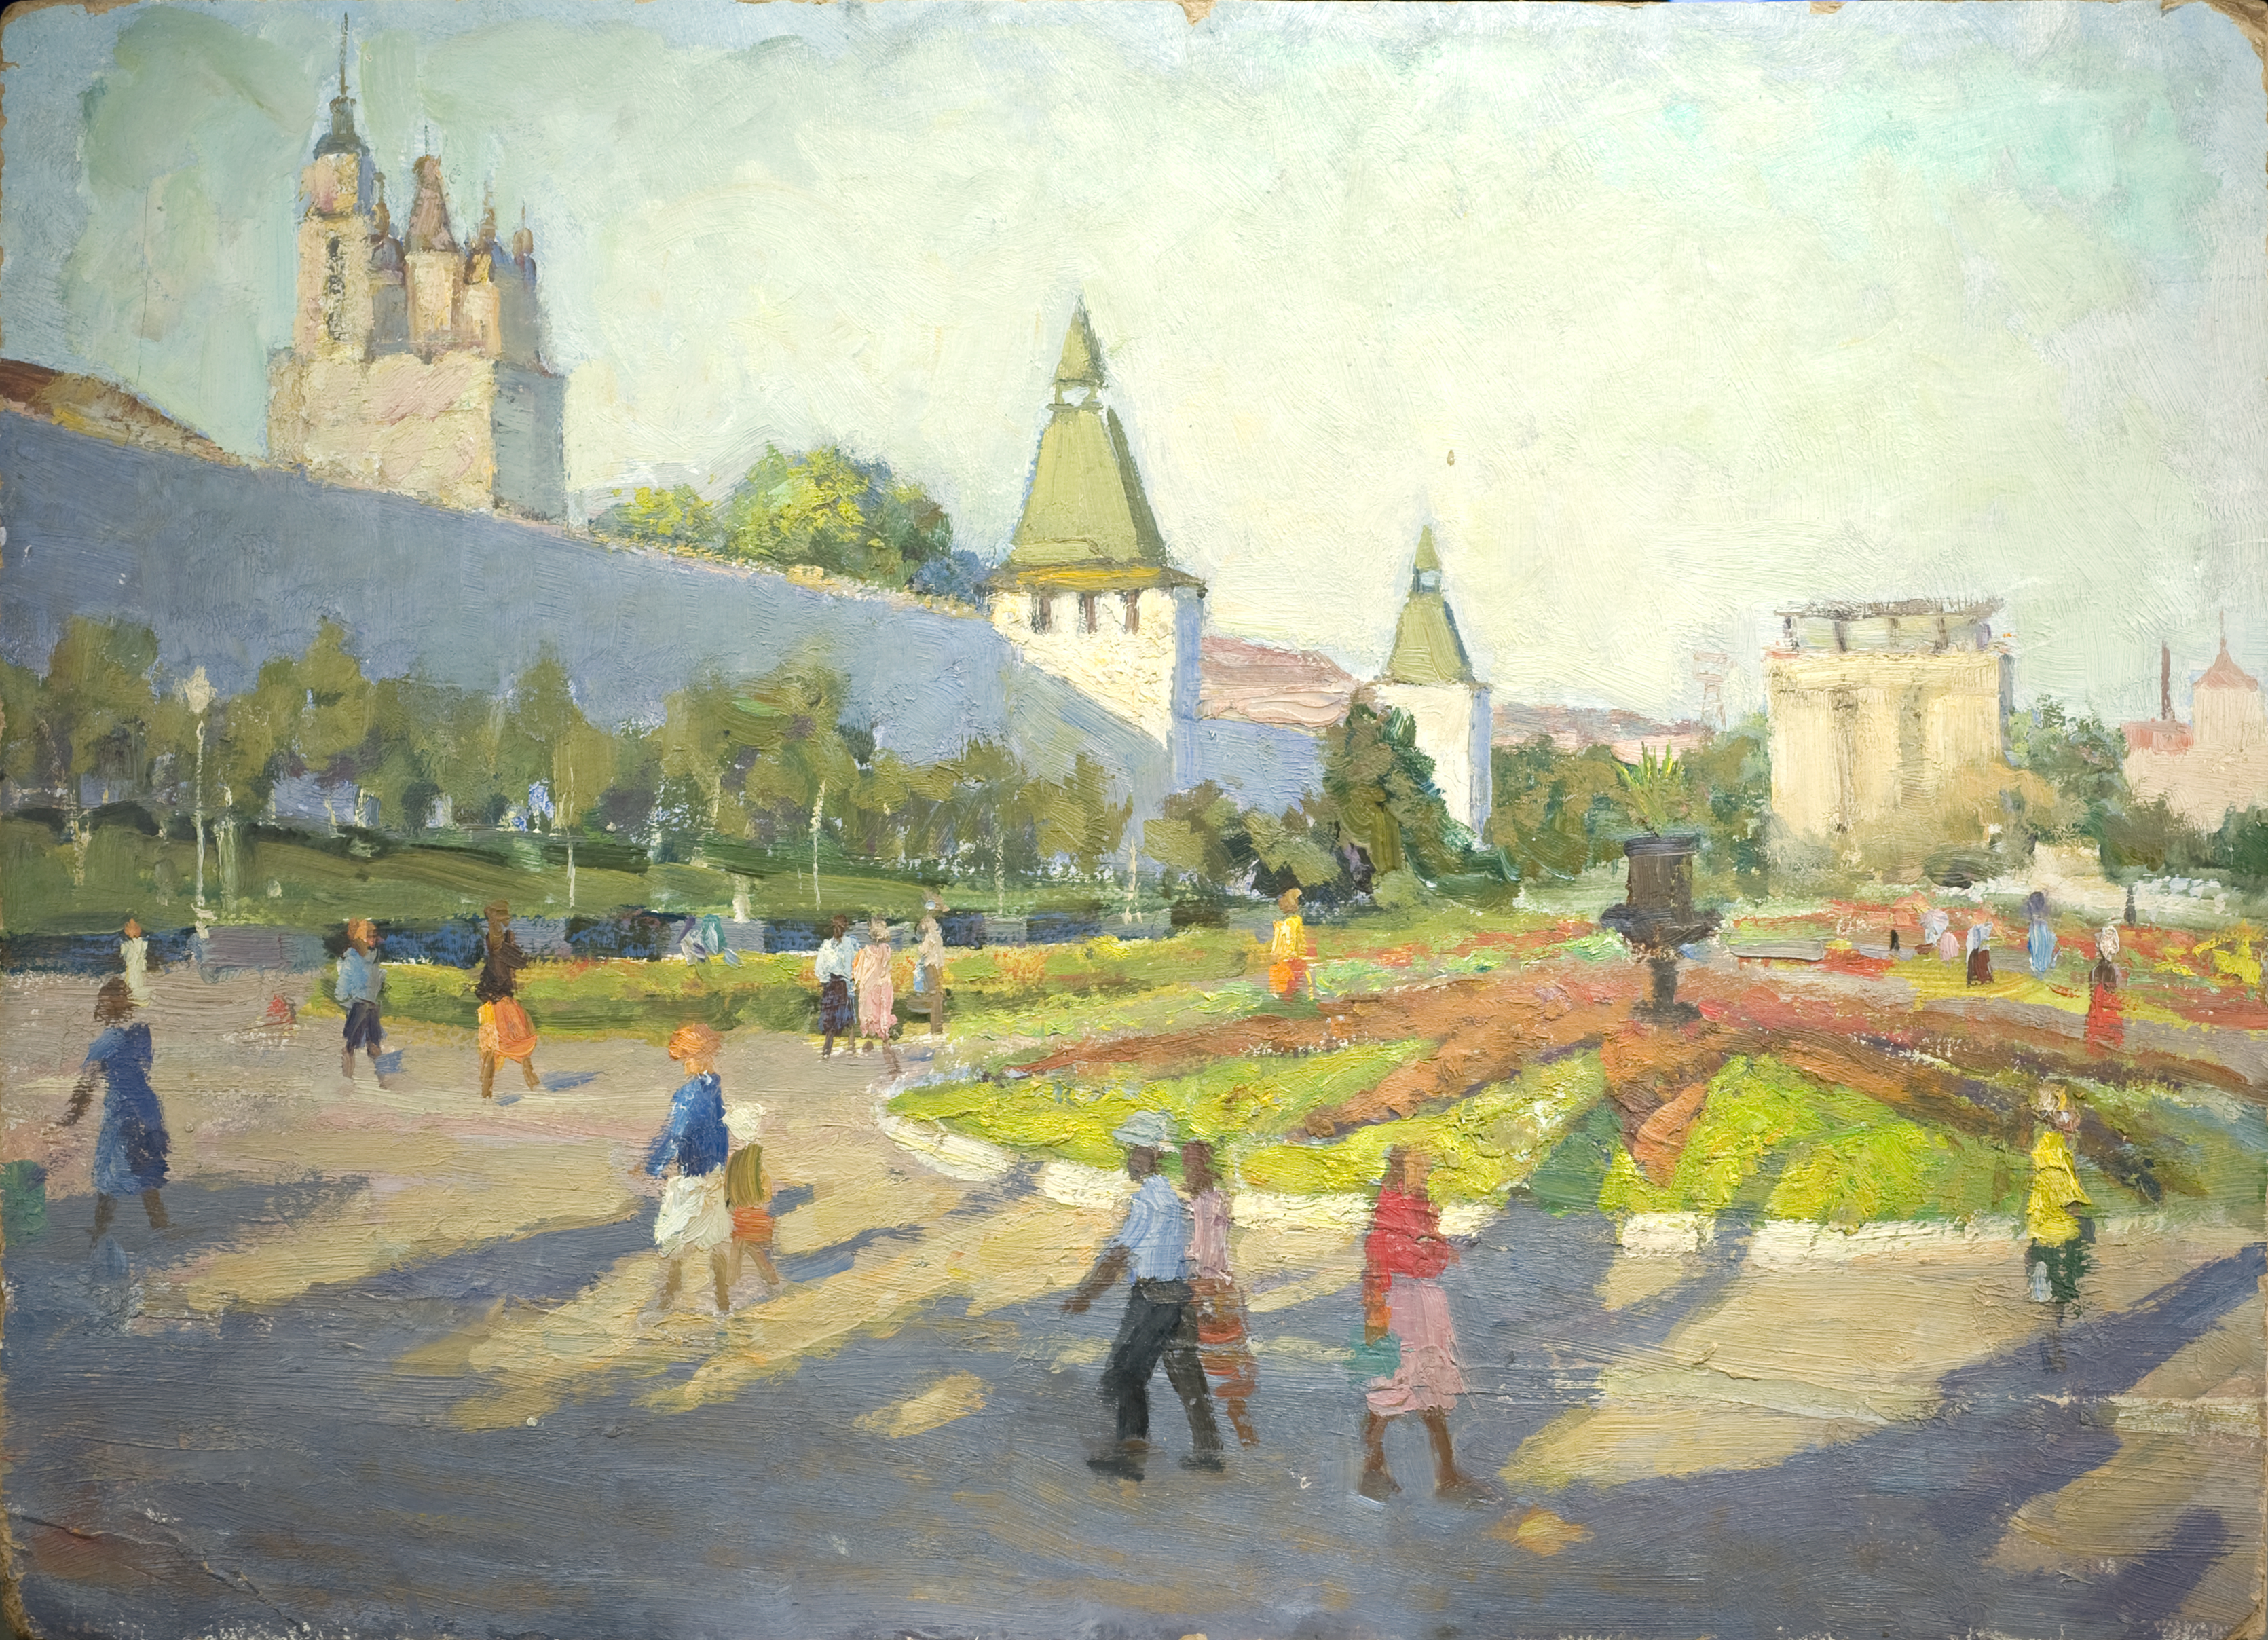 Rasypnov Vitaly Ivanovich. The Astrakhan Kremlin. - landofmagazines.com